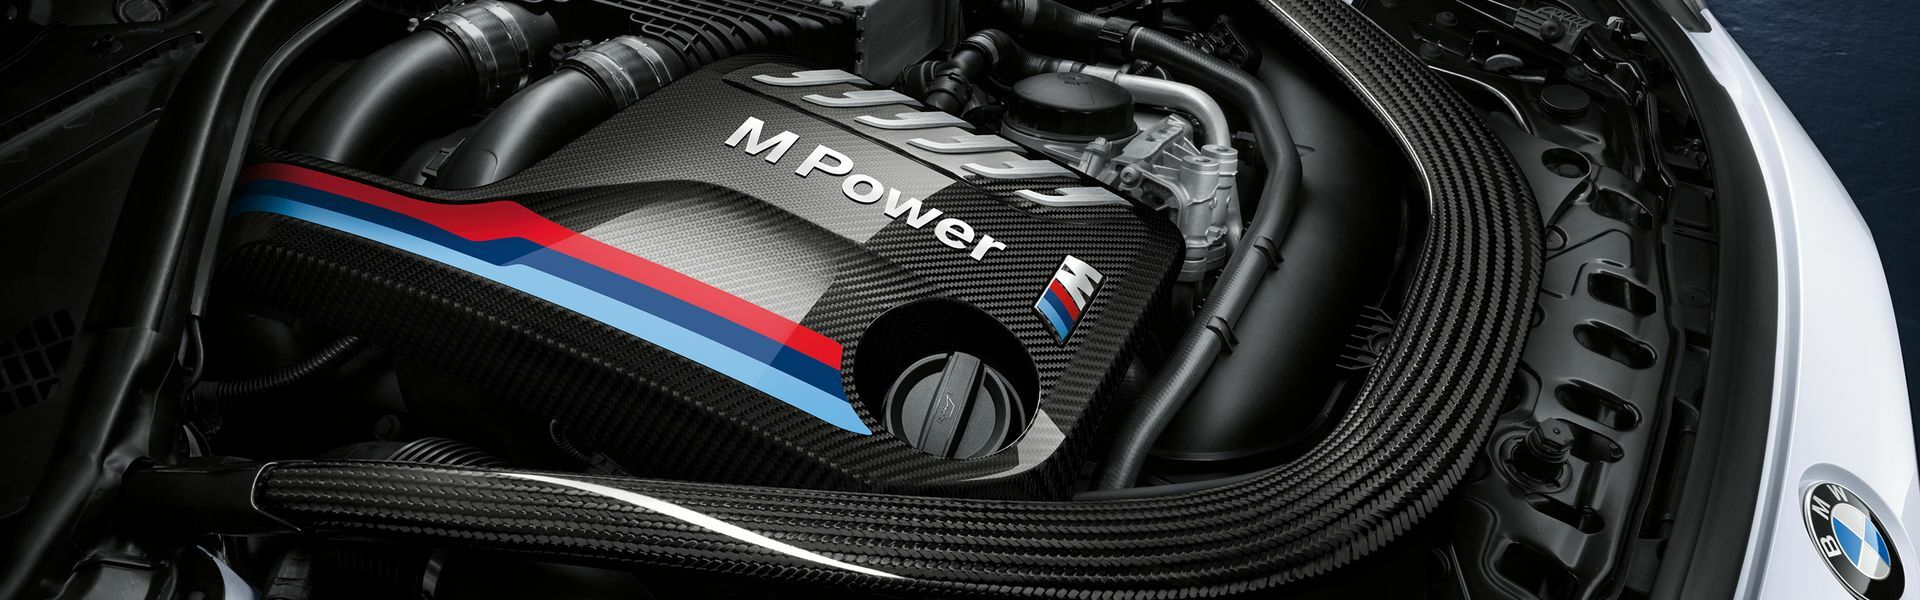 Zvýšení výkonu/ Softwarové úpravy/ Drobné performance díly pro automobil Porsche 911 GT3 992